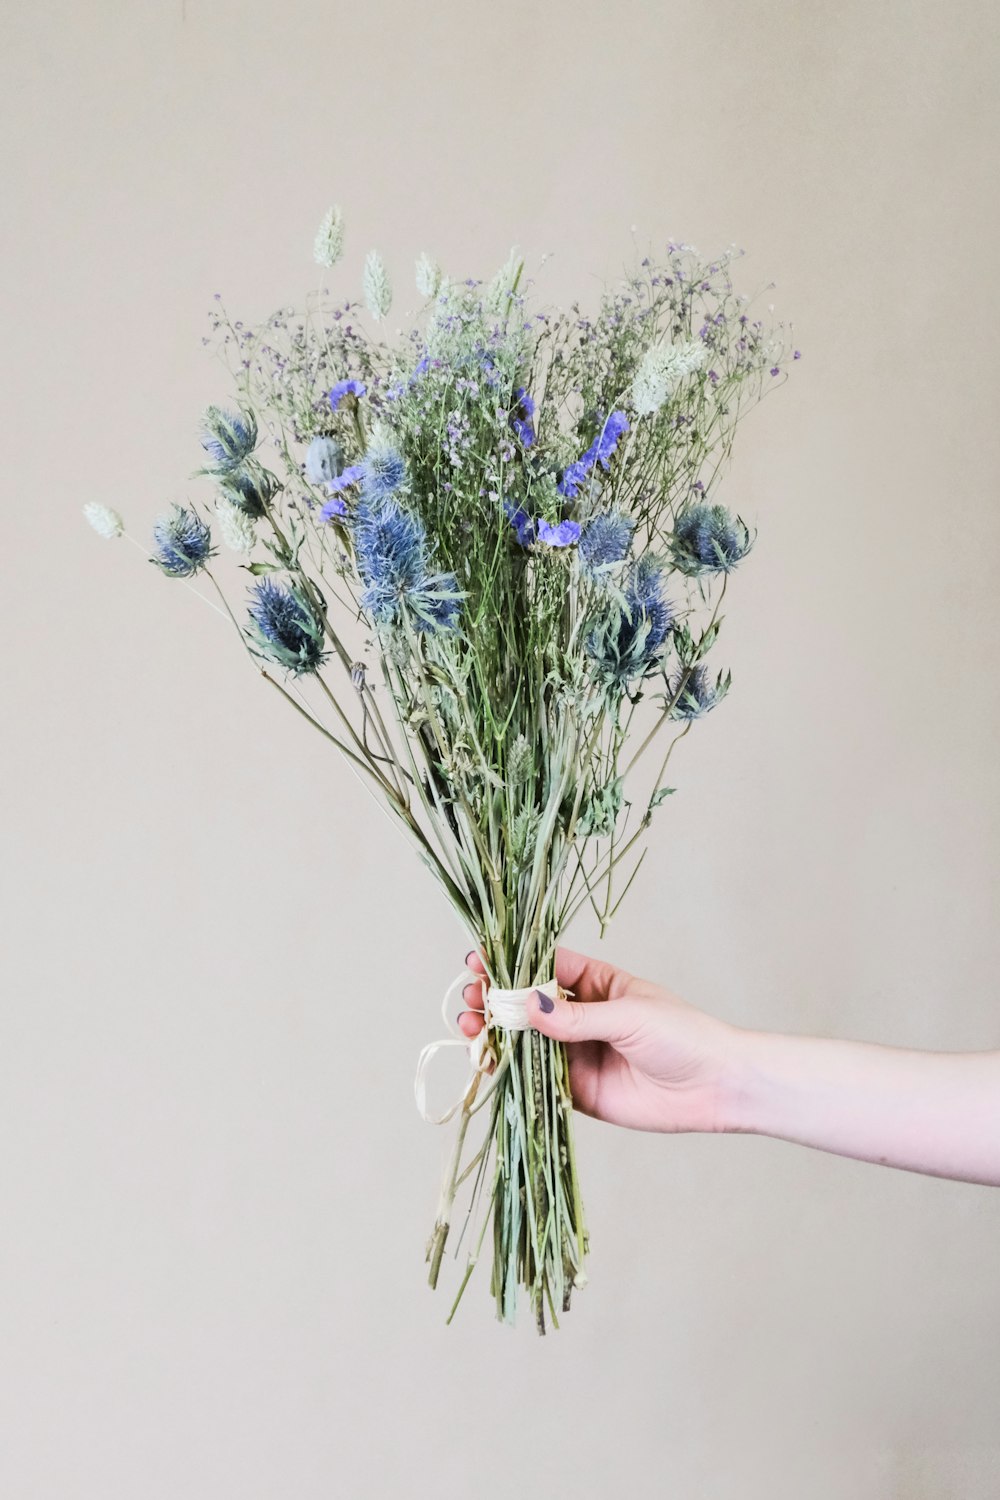 pessoa segurando flores azuis e brancas